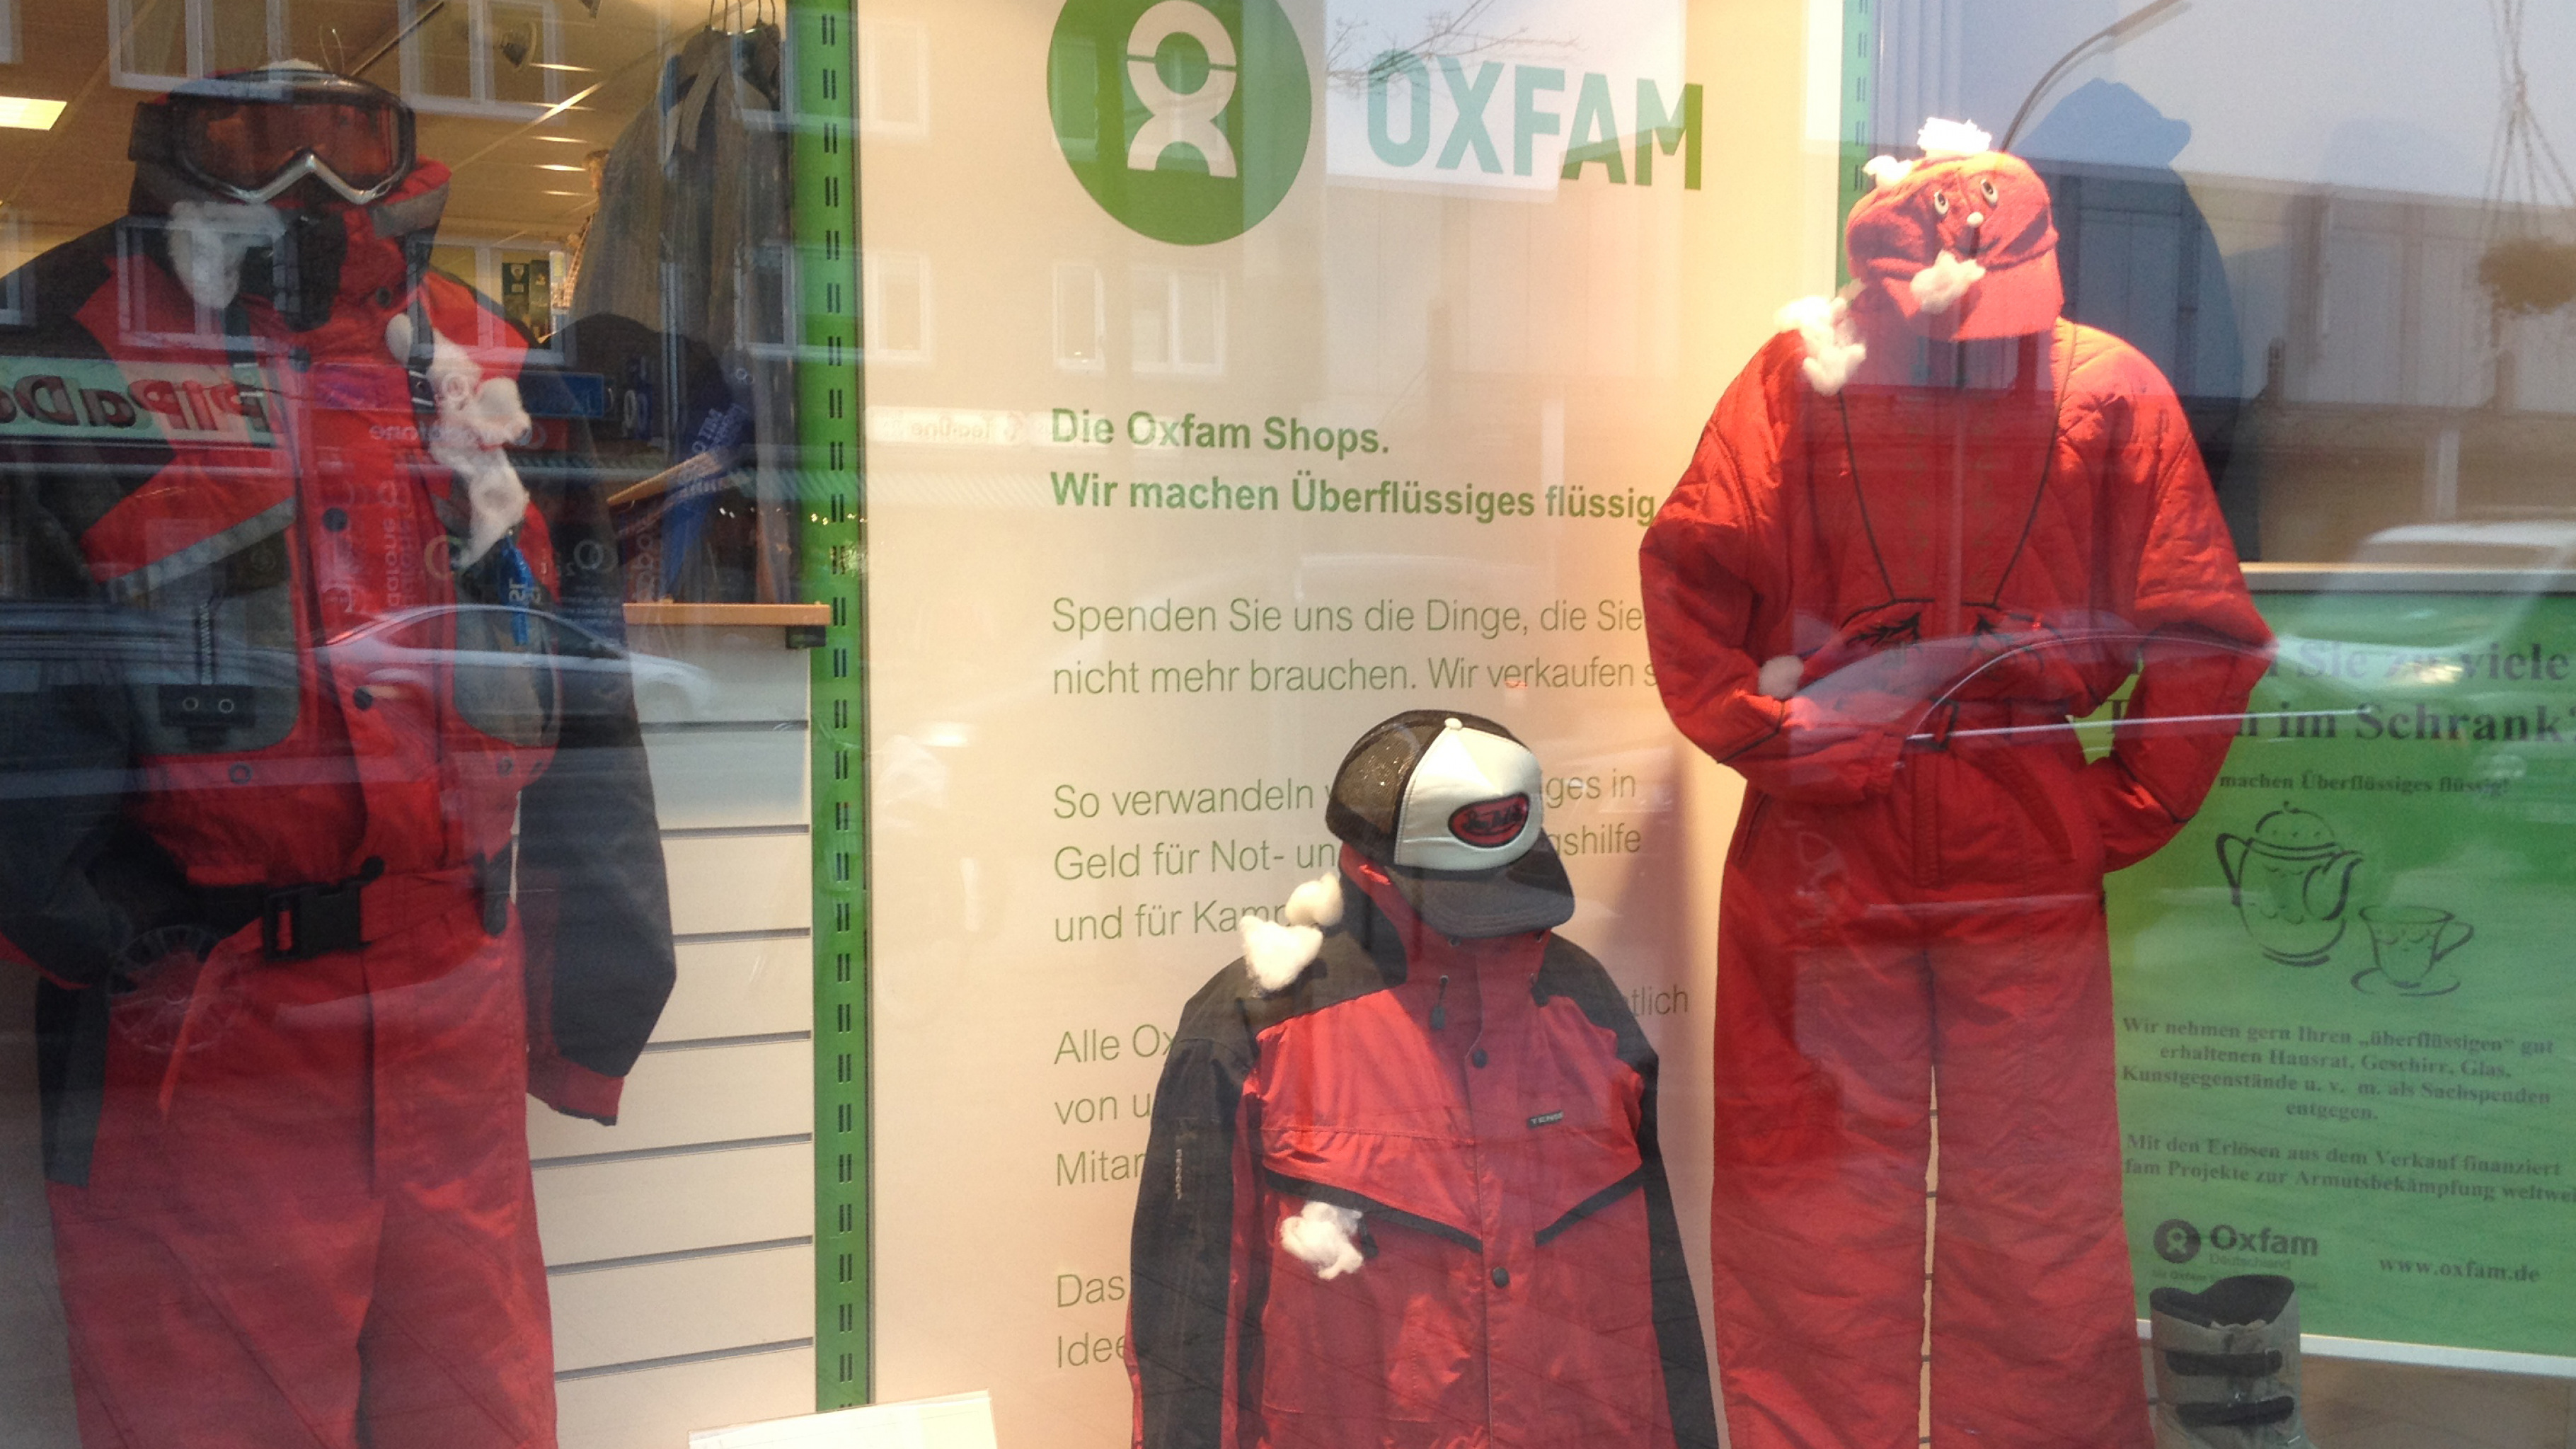 Oxfam Shop Schaufenster Winterkleidung